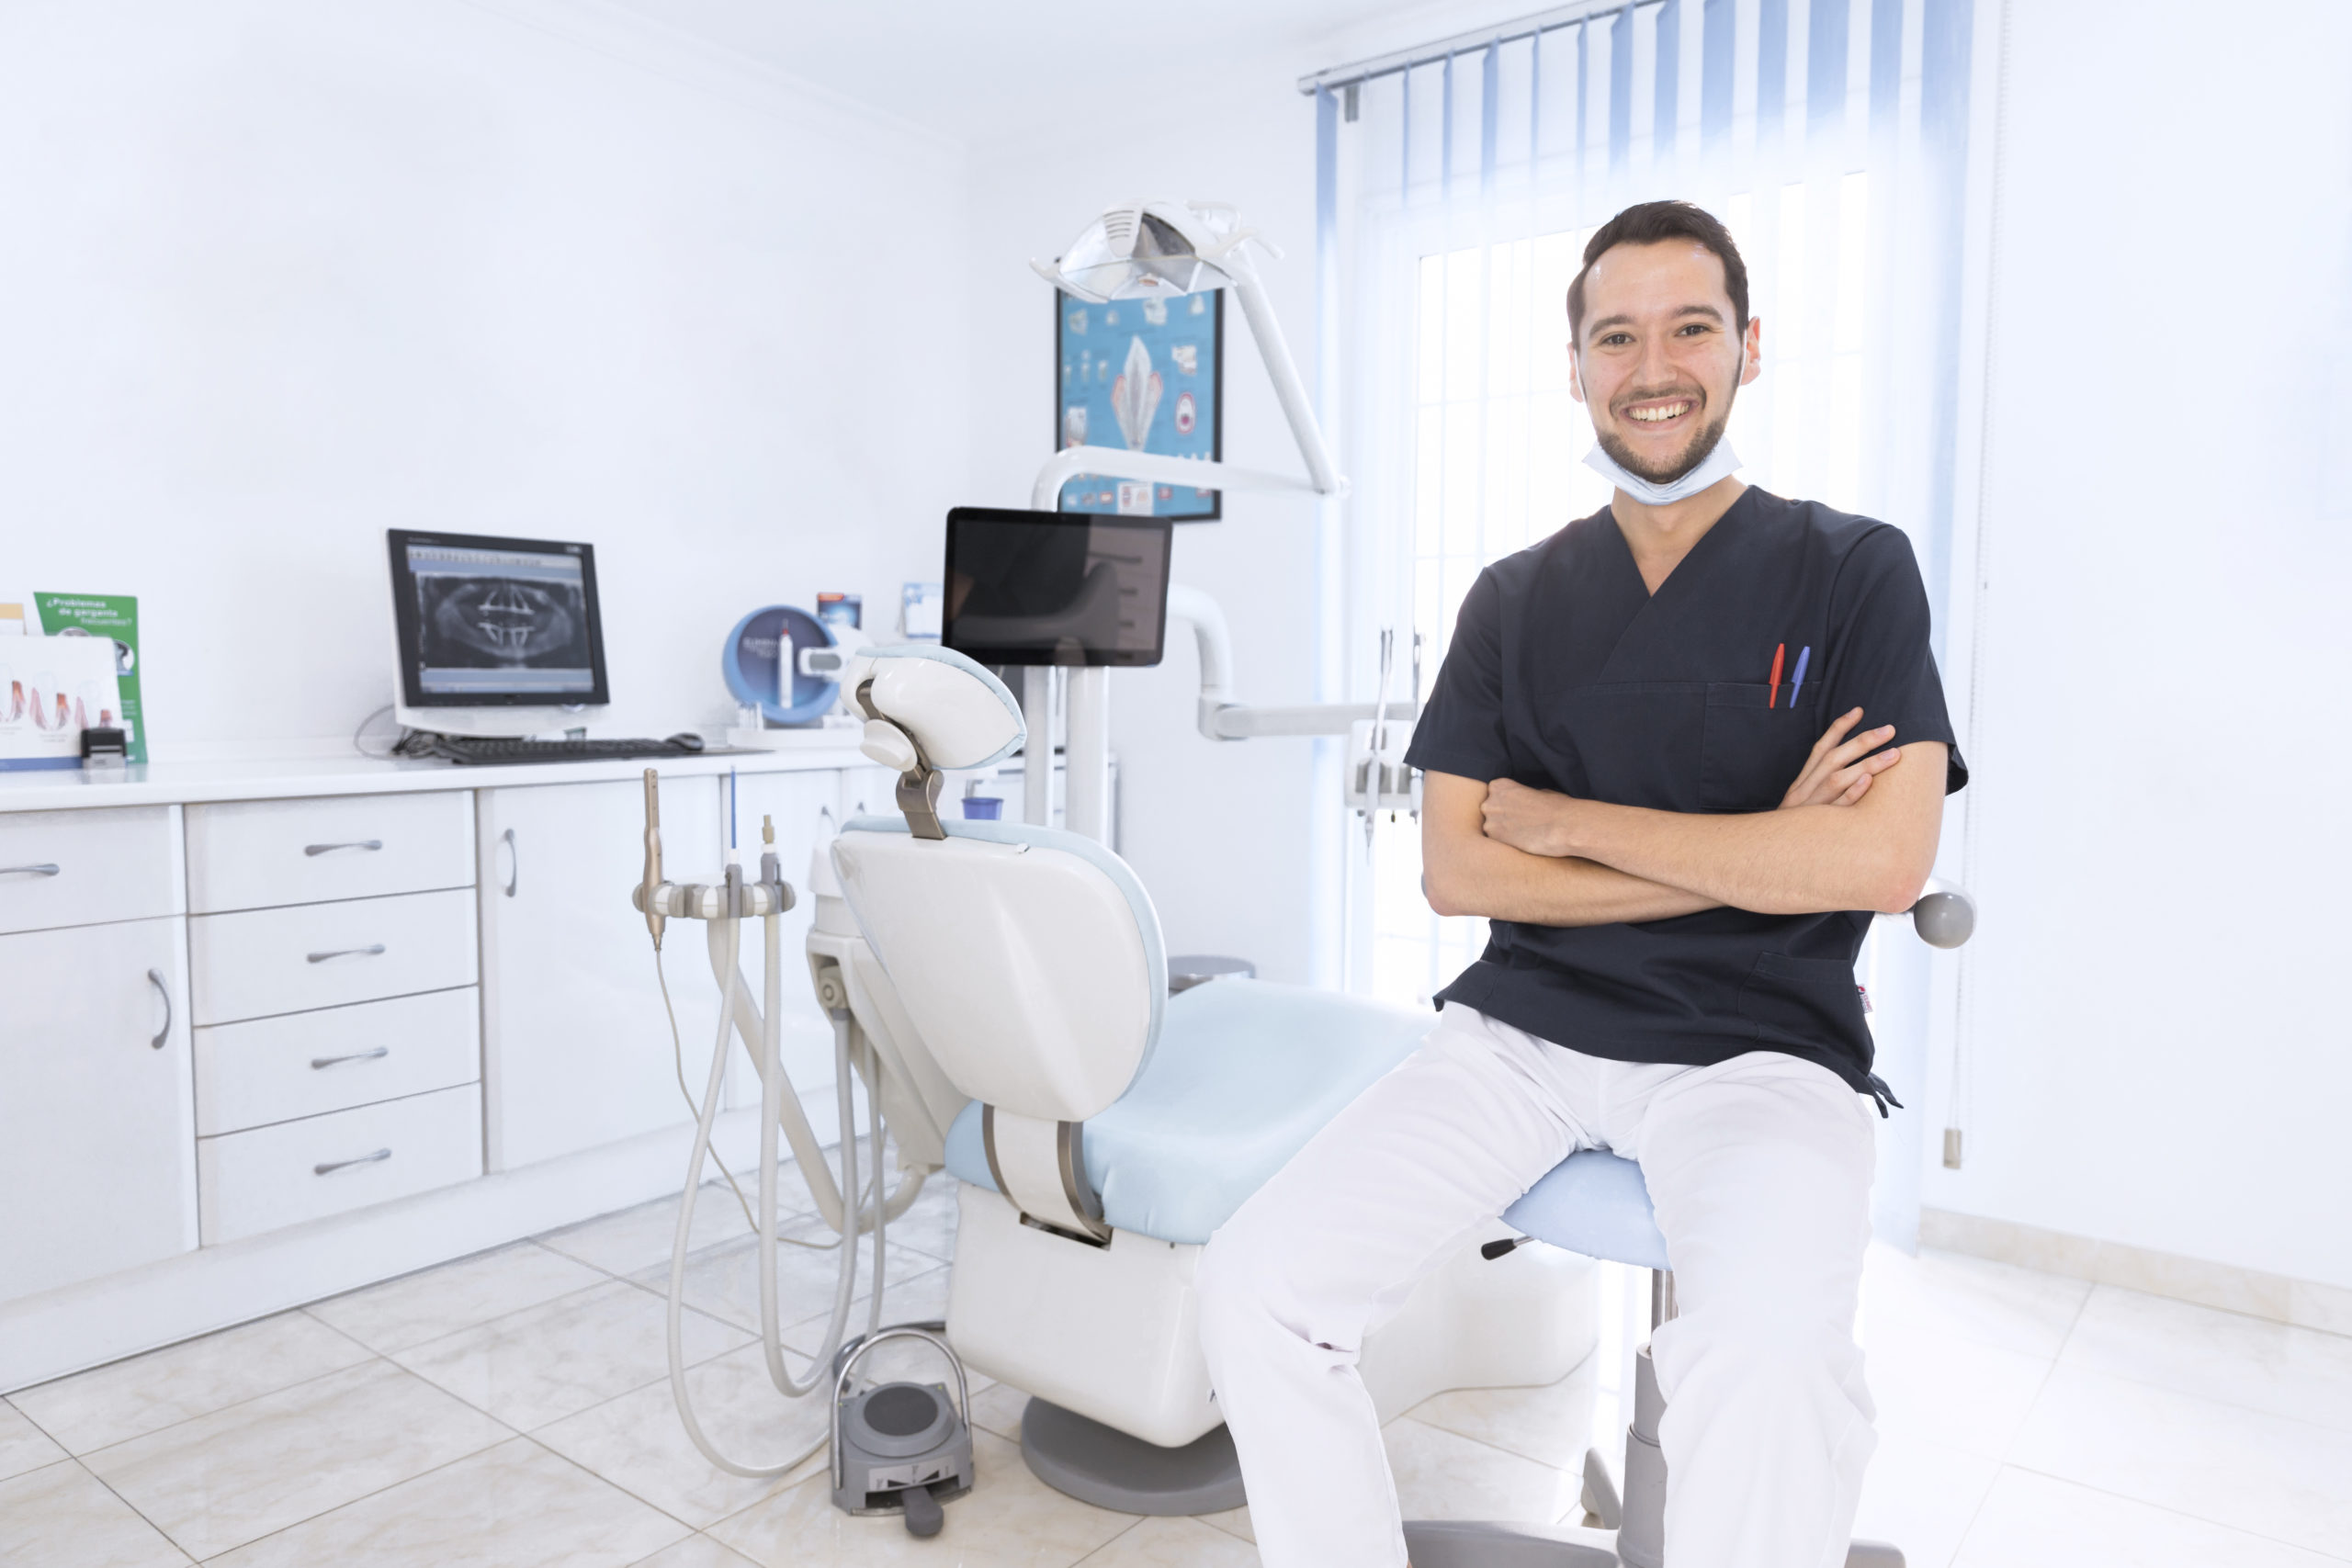 What Makes Your Dental Practice Unique?